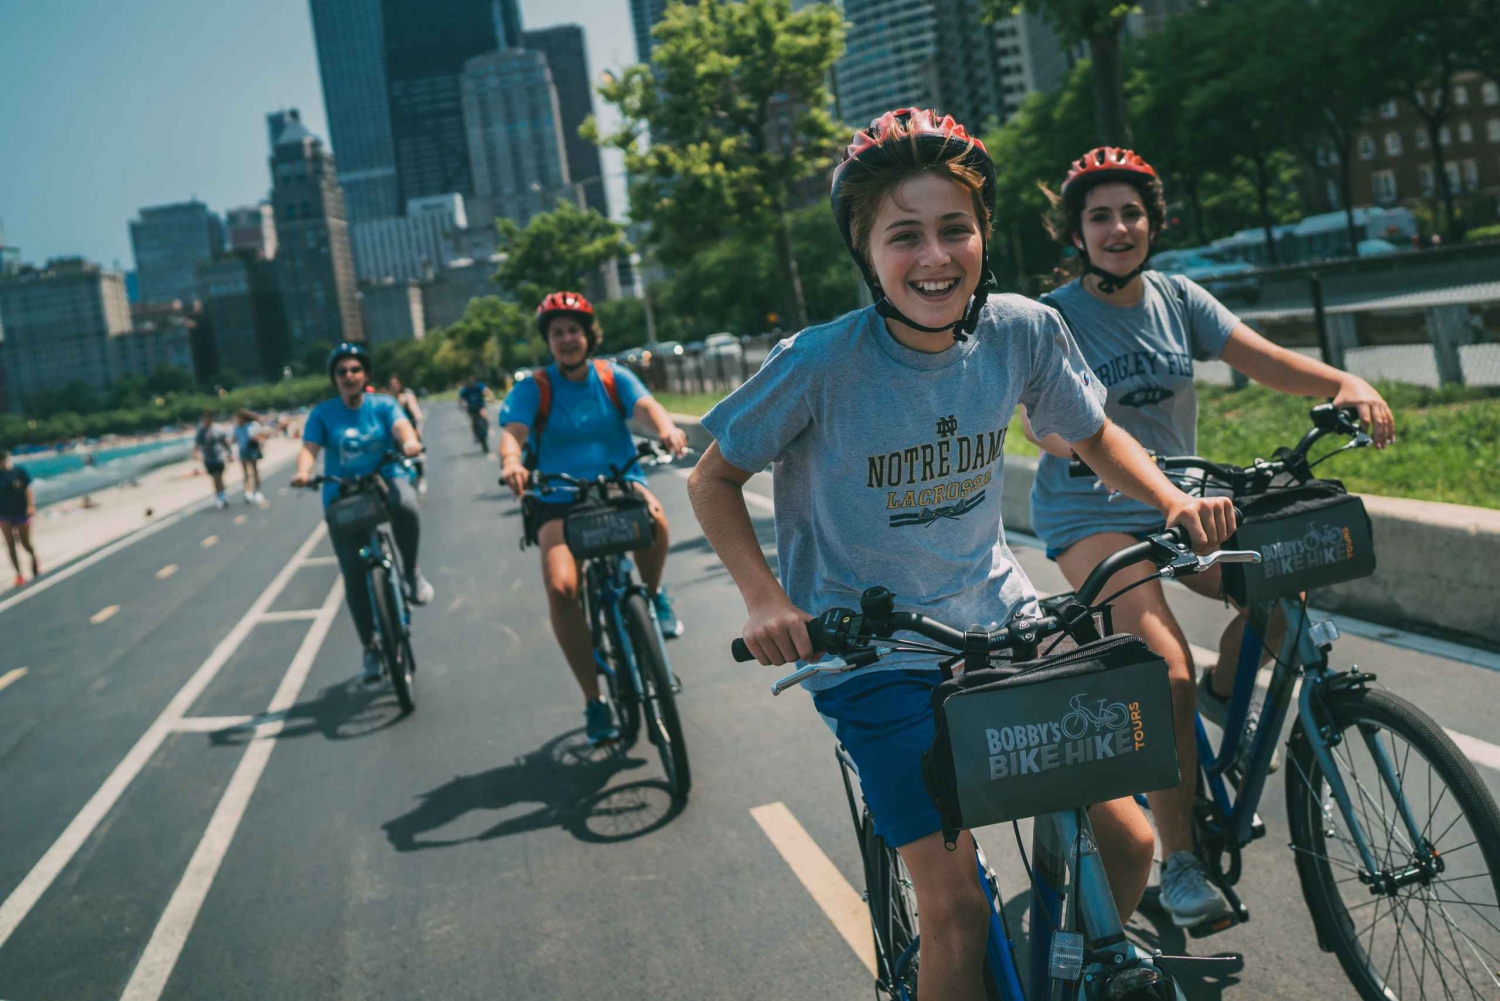 Chicago: Rodzinna wycieczka rowerowa do centrum z jedzeniem i zwiedzaniem